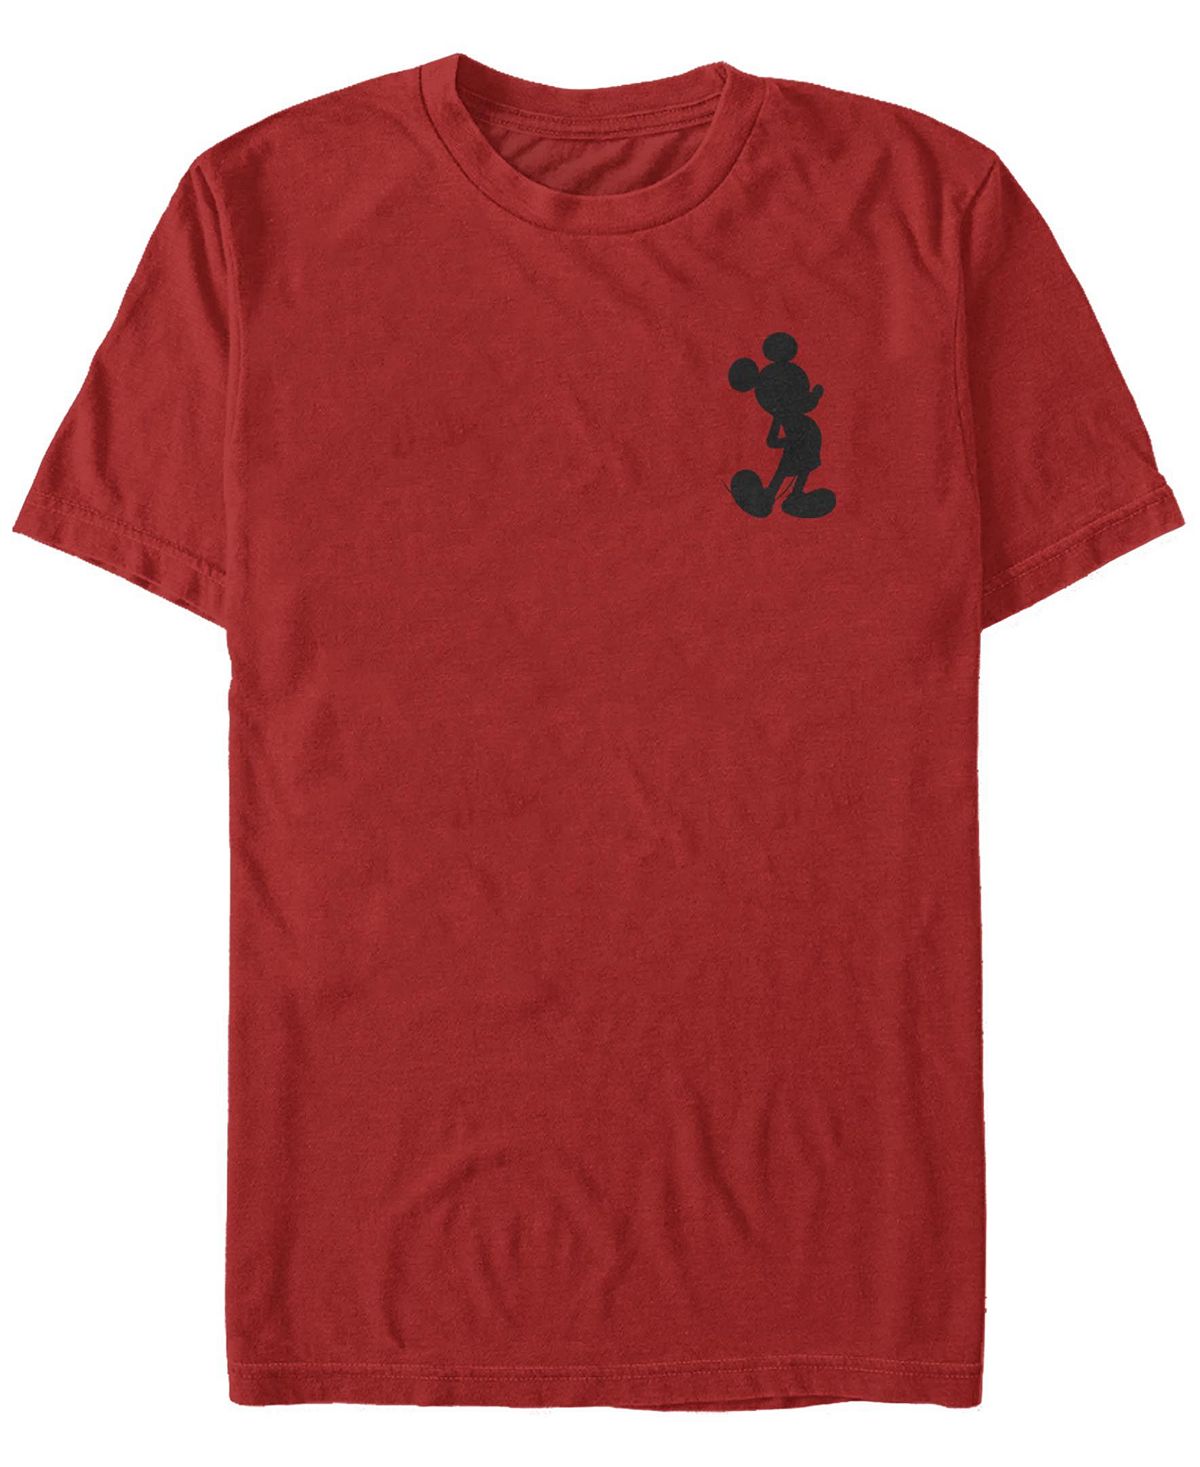 Мужская футболка с круглым вырезом и короткими рукавами с силуэтом микки мауса Fifth Sun, красный мужская классическая футболка с короткими рукавами и изображением микки вампира микки большого персонажа fifth sun